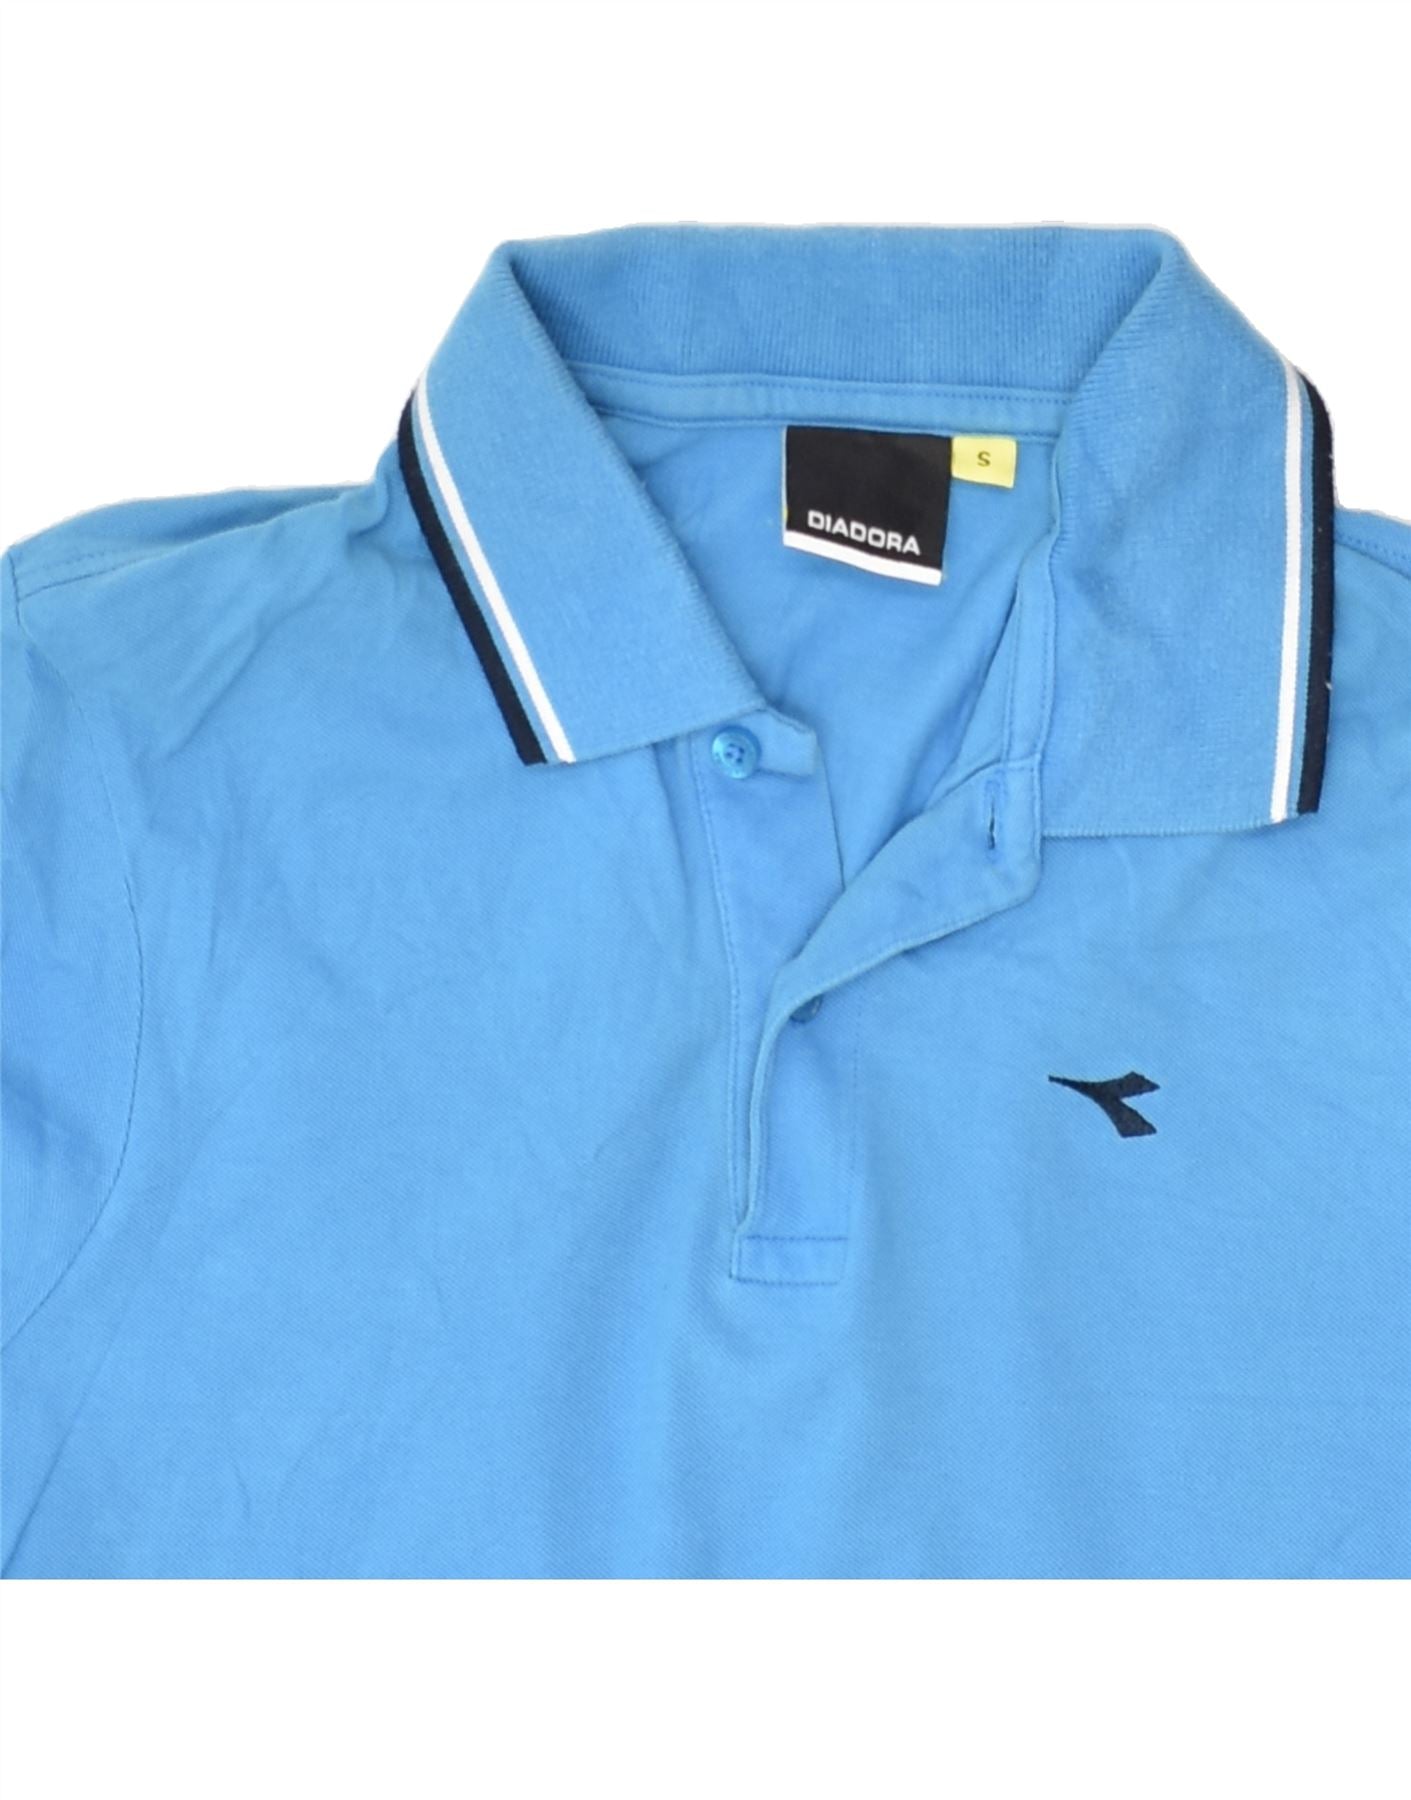 DIADORA Mens Polo Shirt Small Blue Cotton